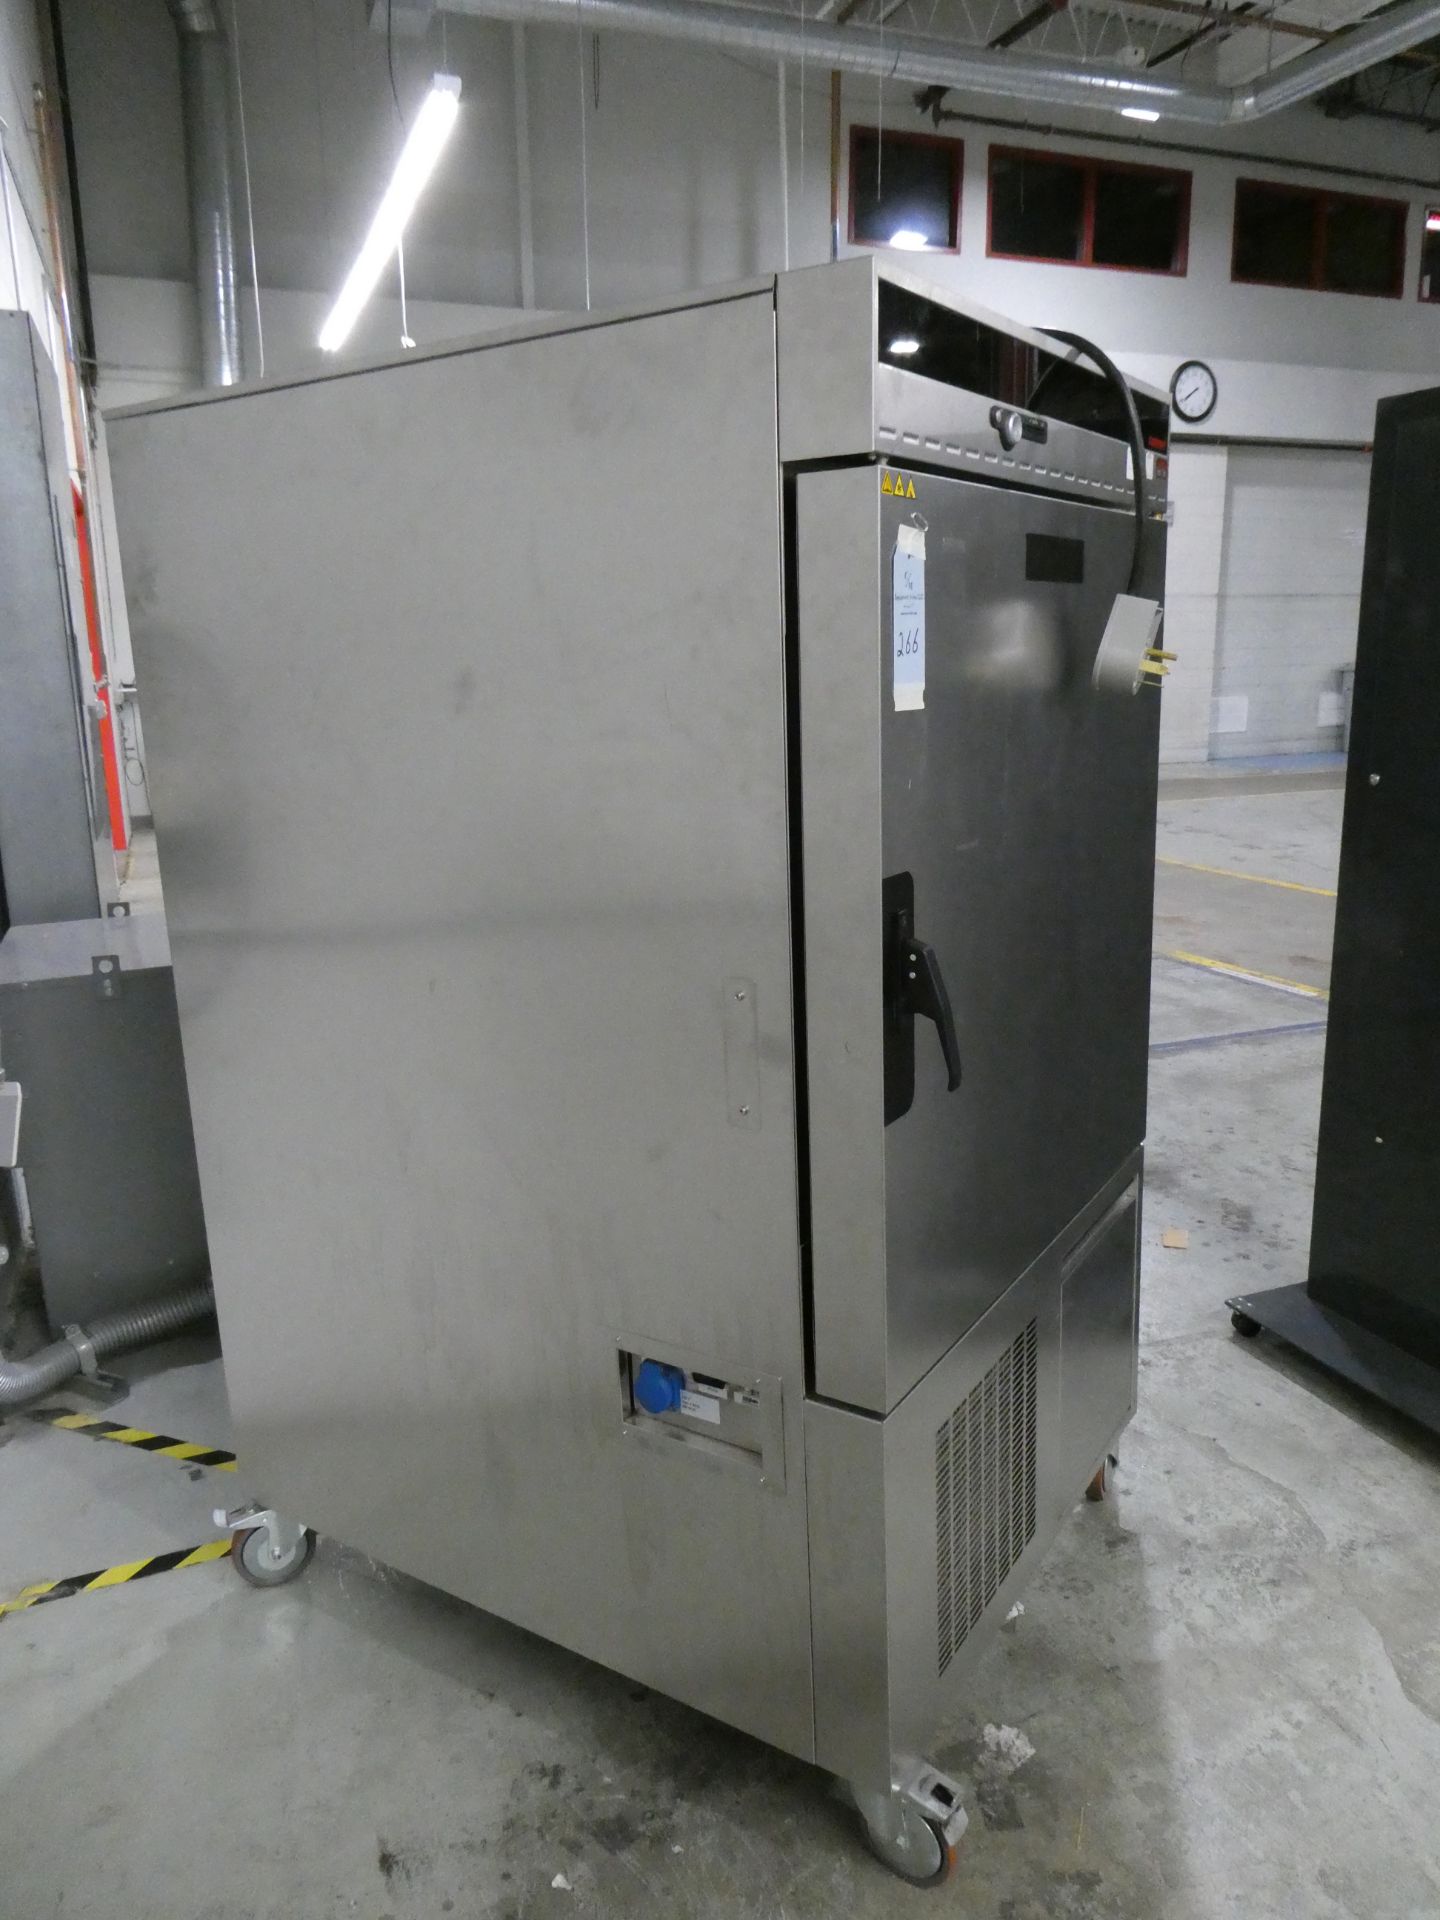 Memmert 2015 Environment Chamber (Respiratory Humidity) Model 605-02 - Image 6 of 9